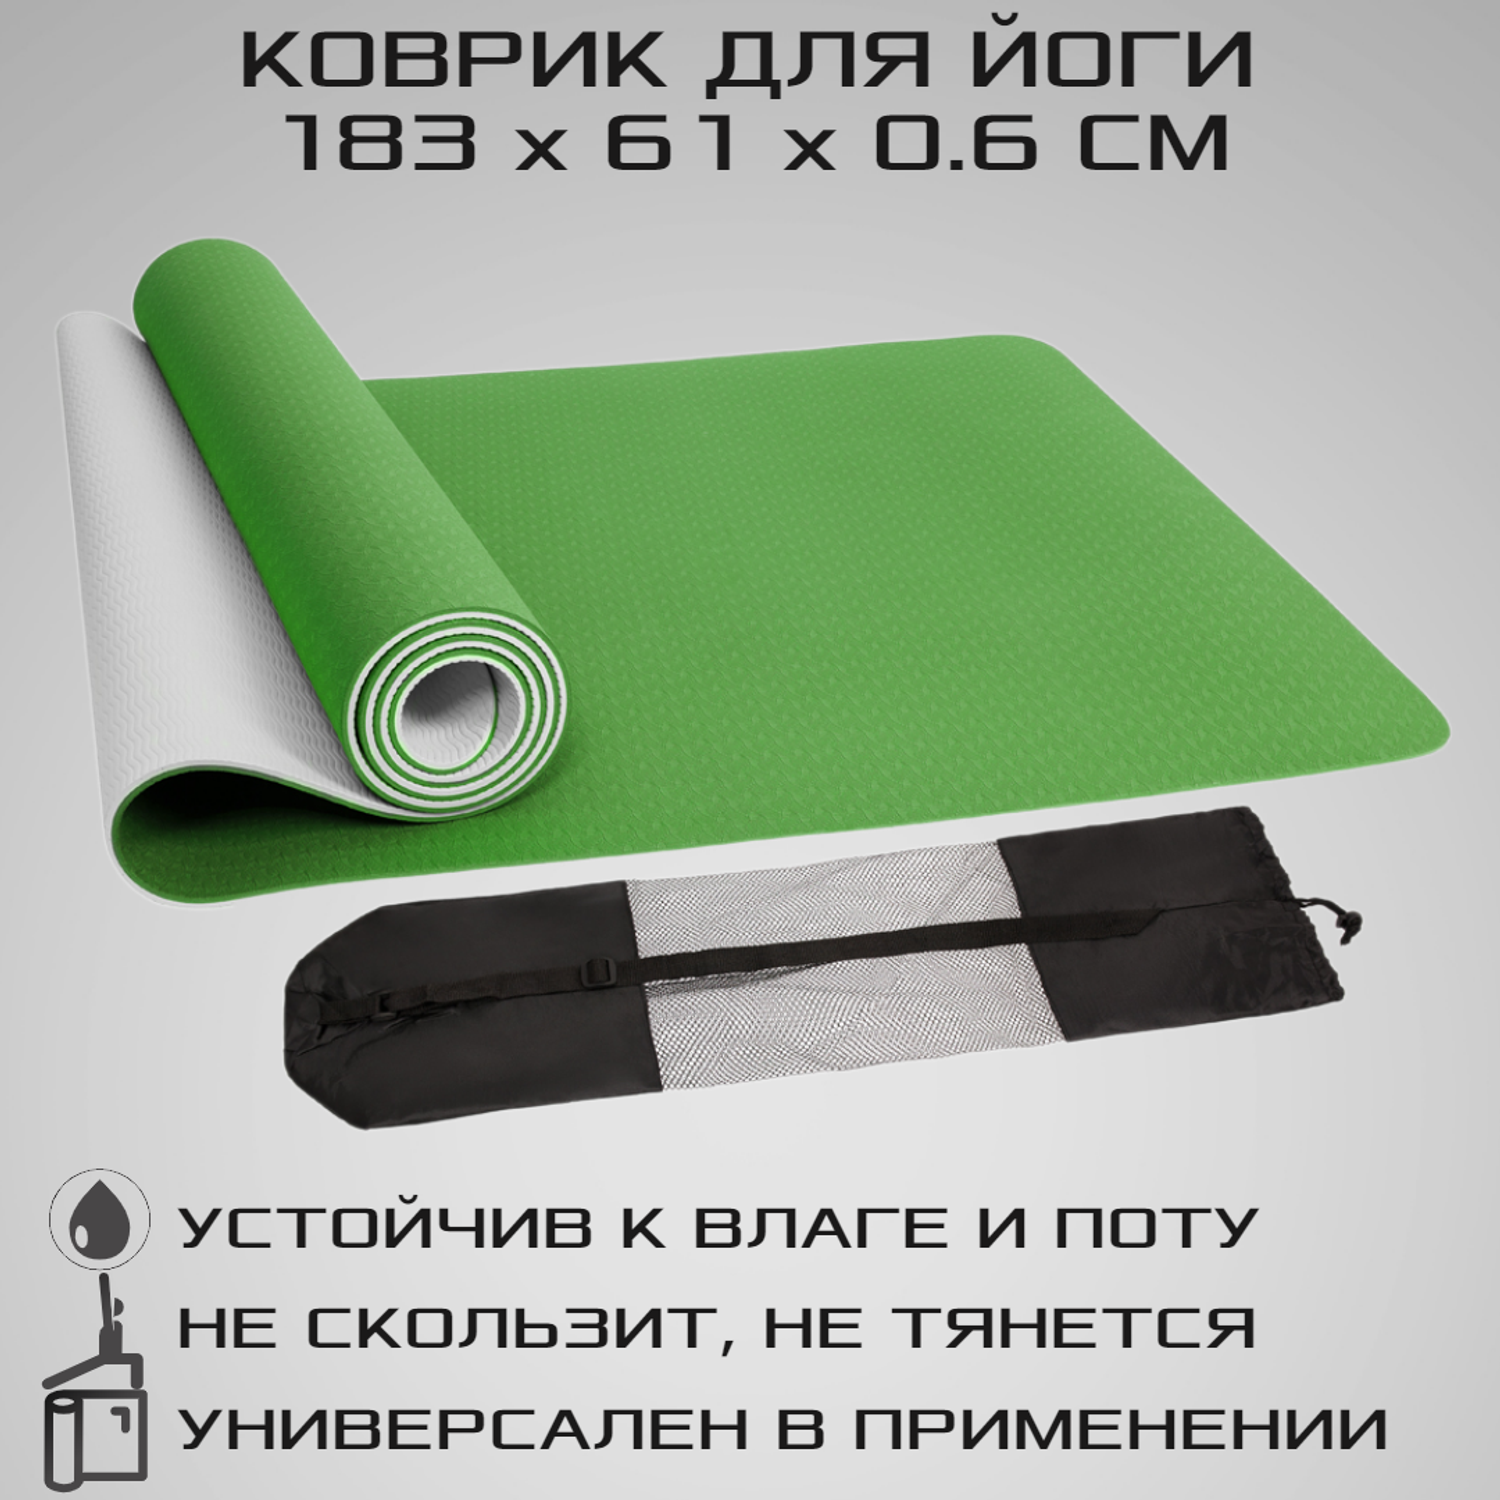 Коврик для йоги STRONG BODY двухсторонний серо-зеленый 183см х 61см х 0.6см - фото 1